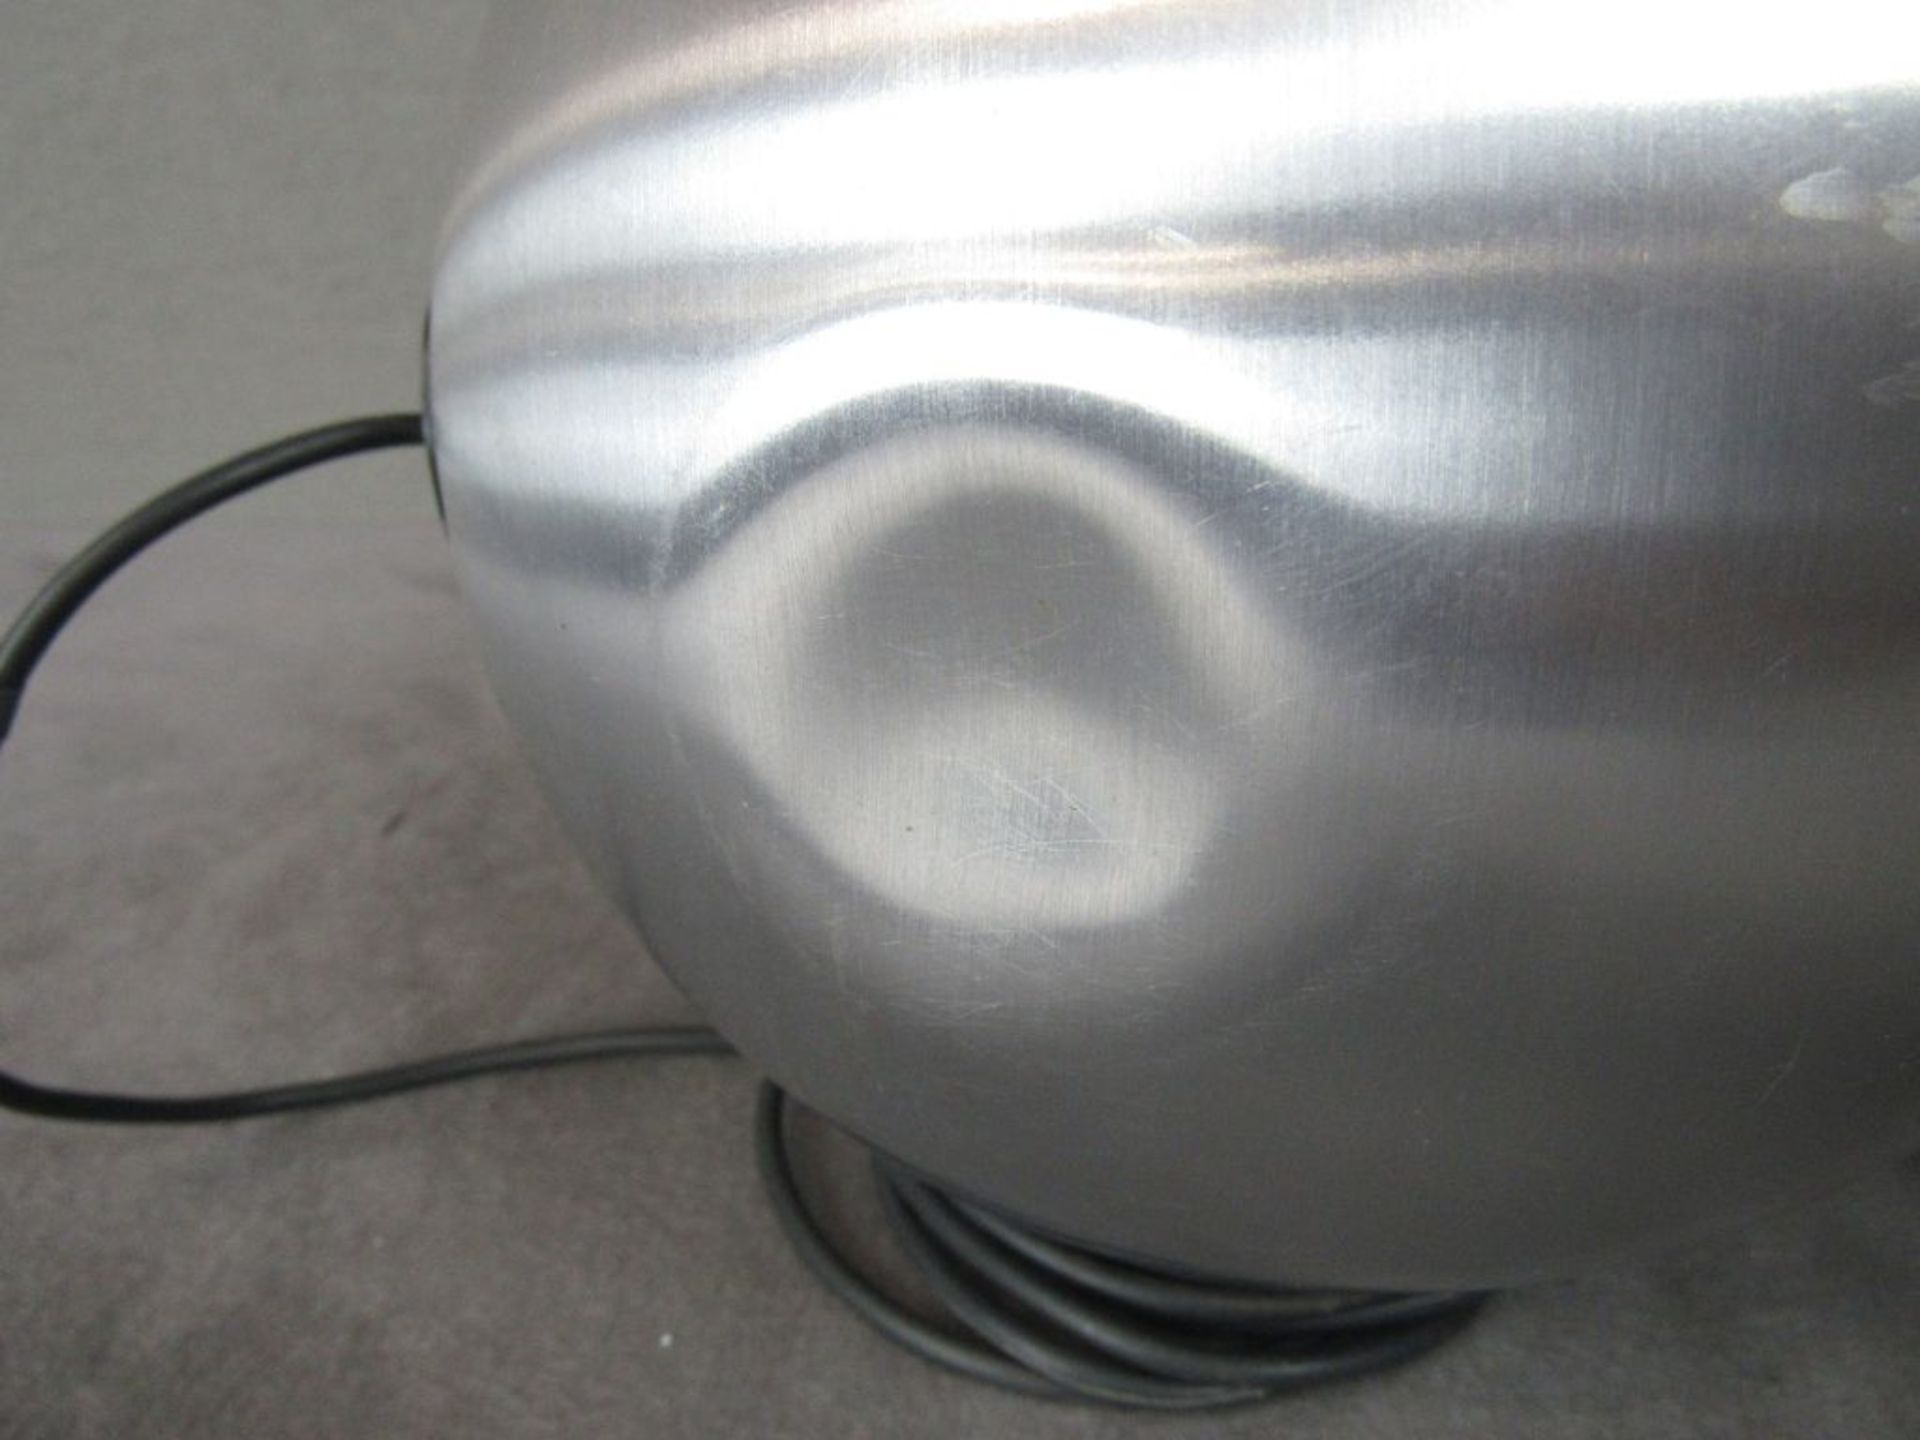 Kugellautsprecher 60er Jahre Telefunken gebürstetes Aluminium 19cm Durchmesser - Bild 4 aus 7